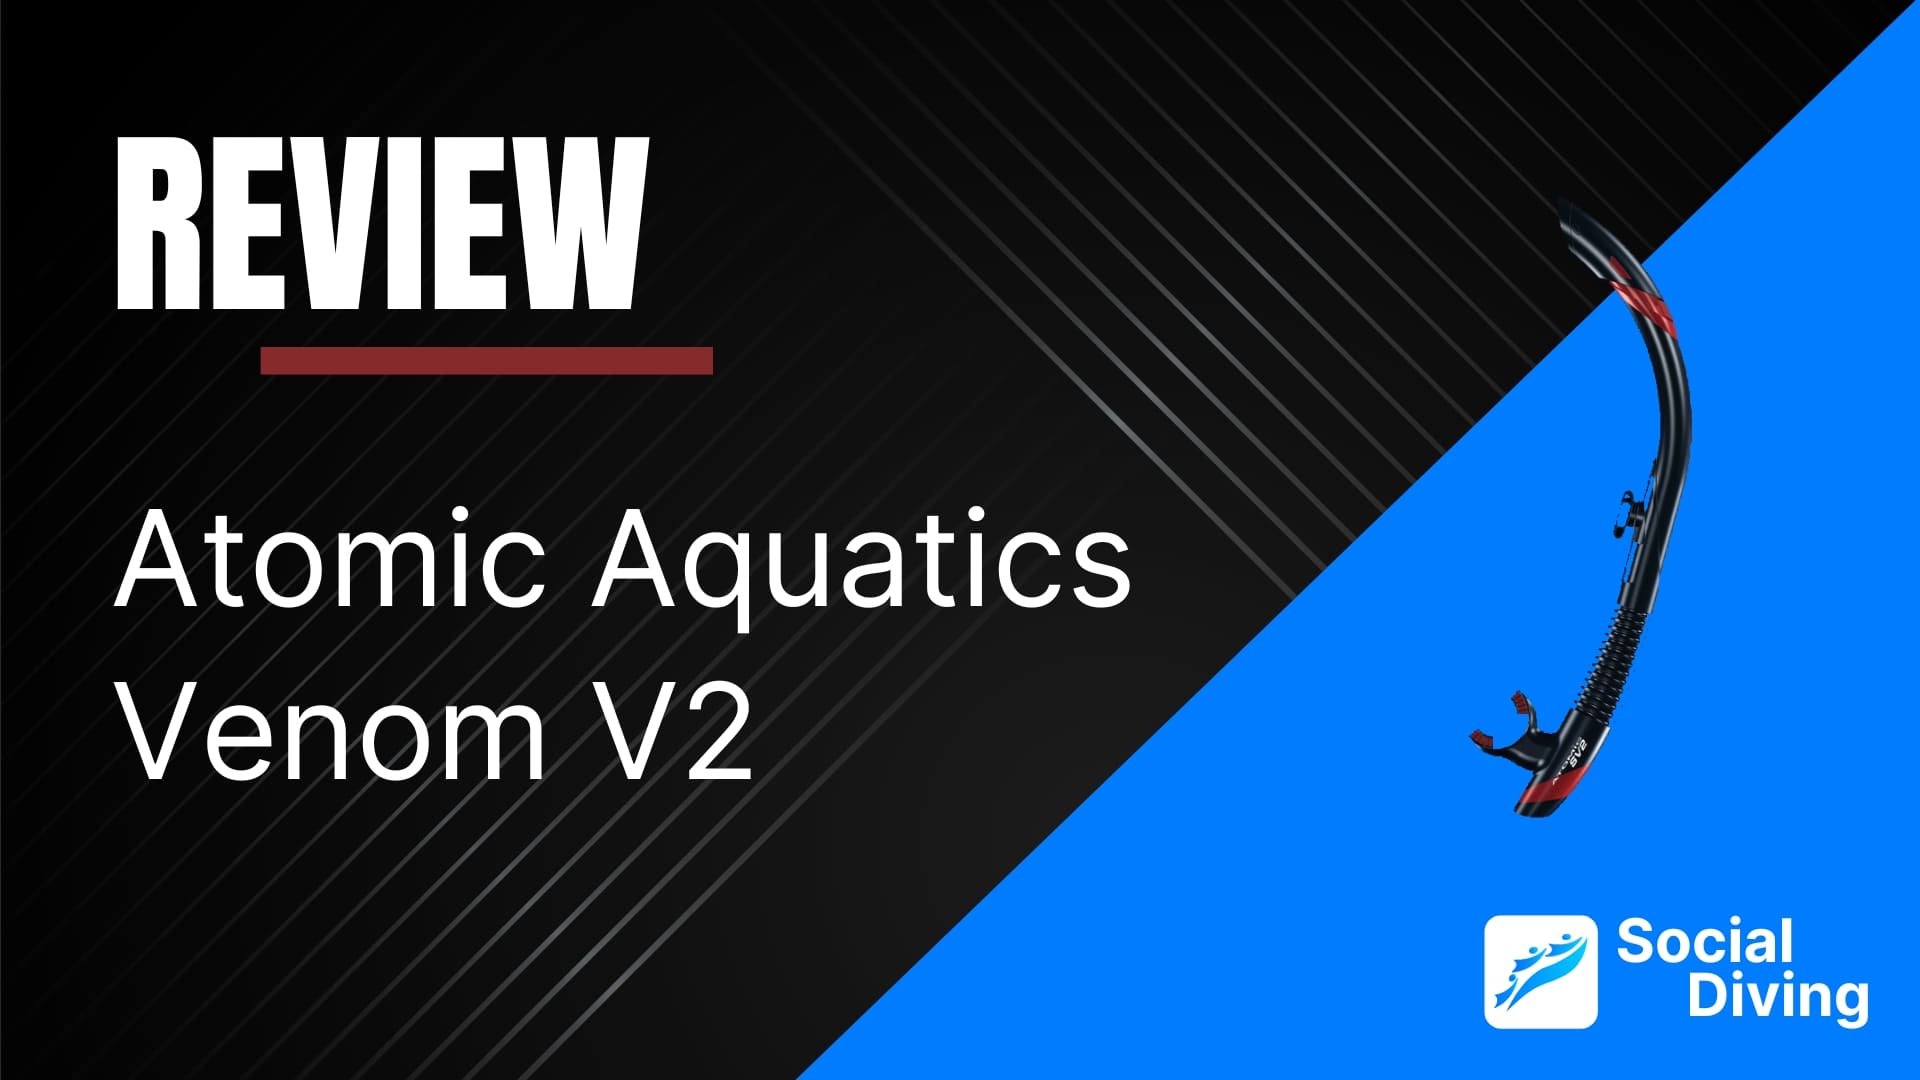 Atomic Aquatics Venom V2 review